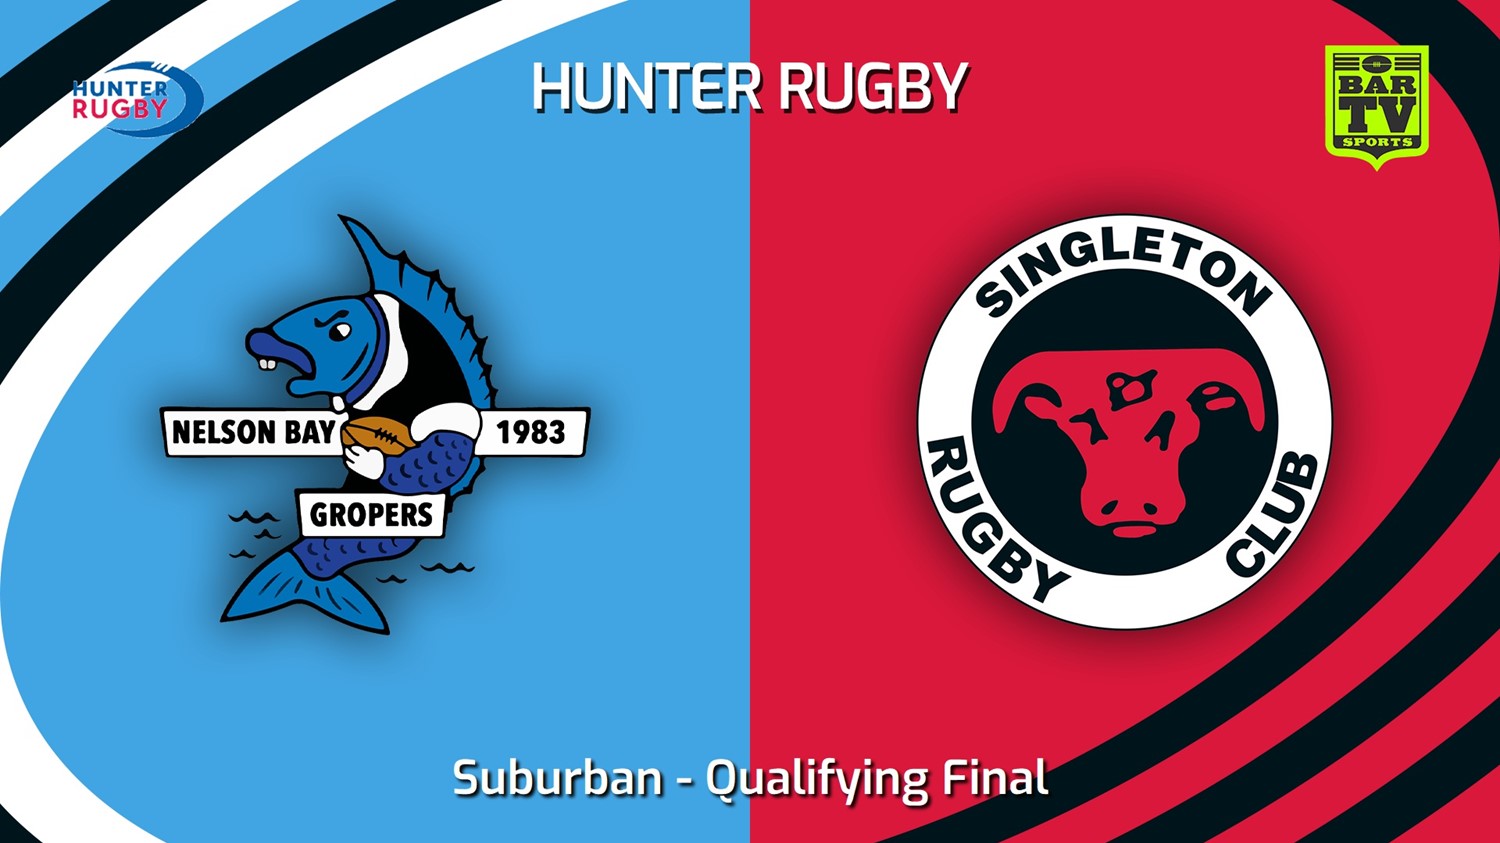 230812-Hunter Rugby Qualifying Final - Suburban - Nelson Bay Gropers v Singleton Bulls Slate Image